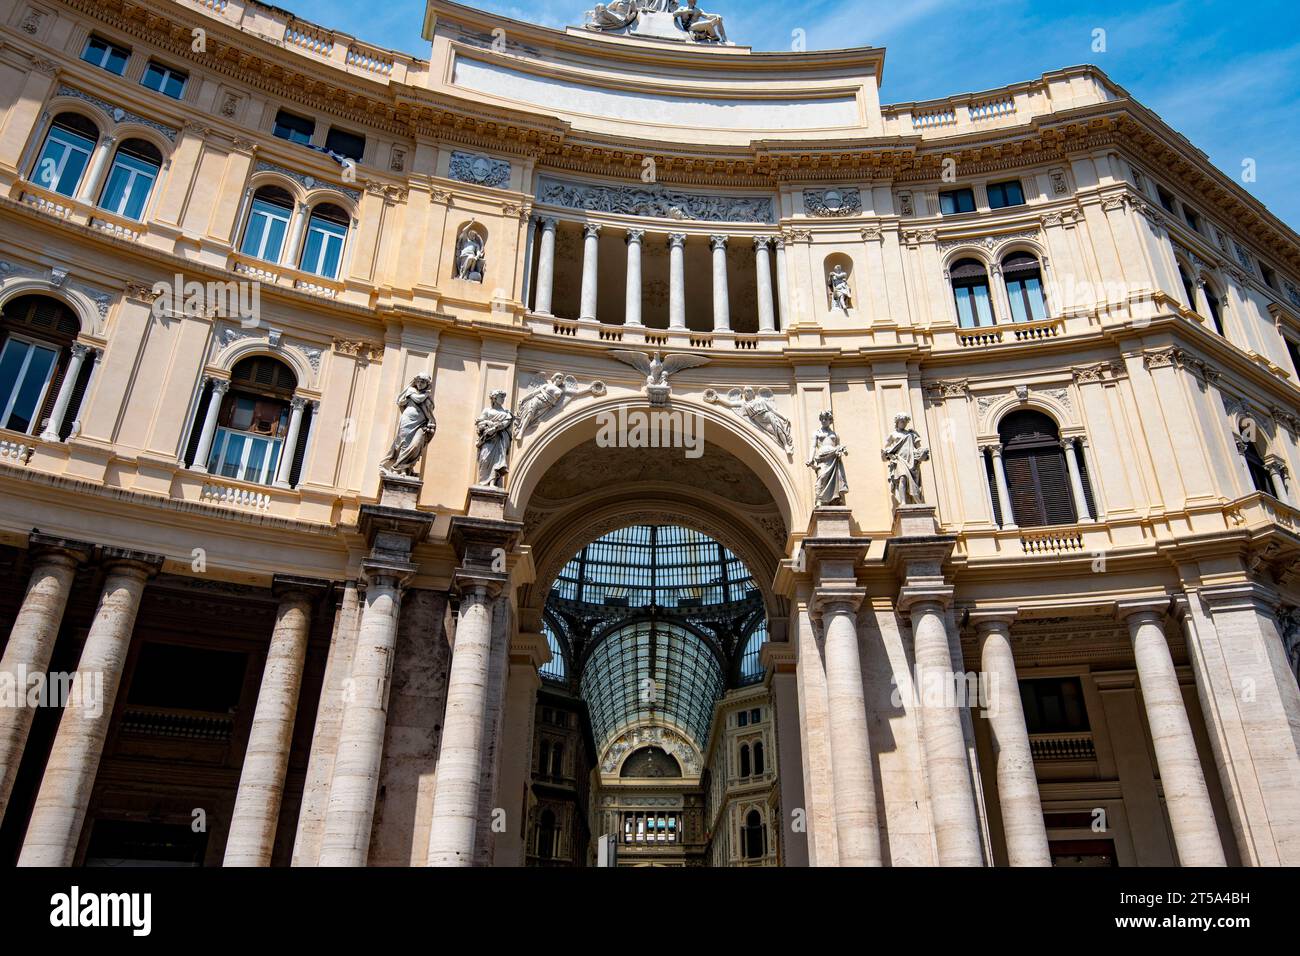 Galleria Umberto I - Naples - Italie Banque D'Images